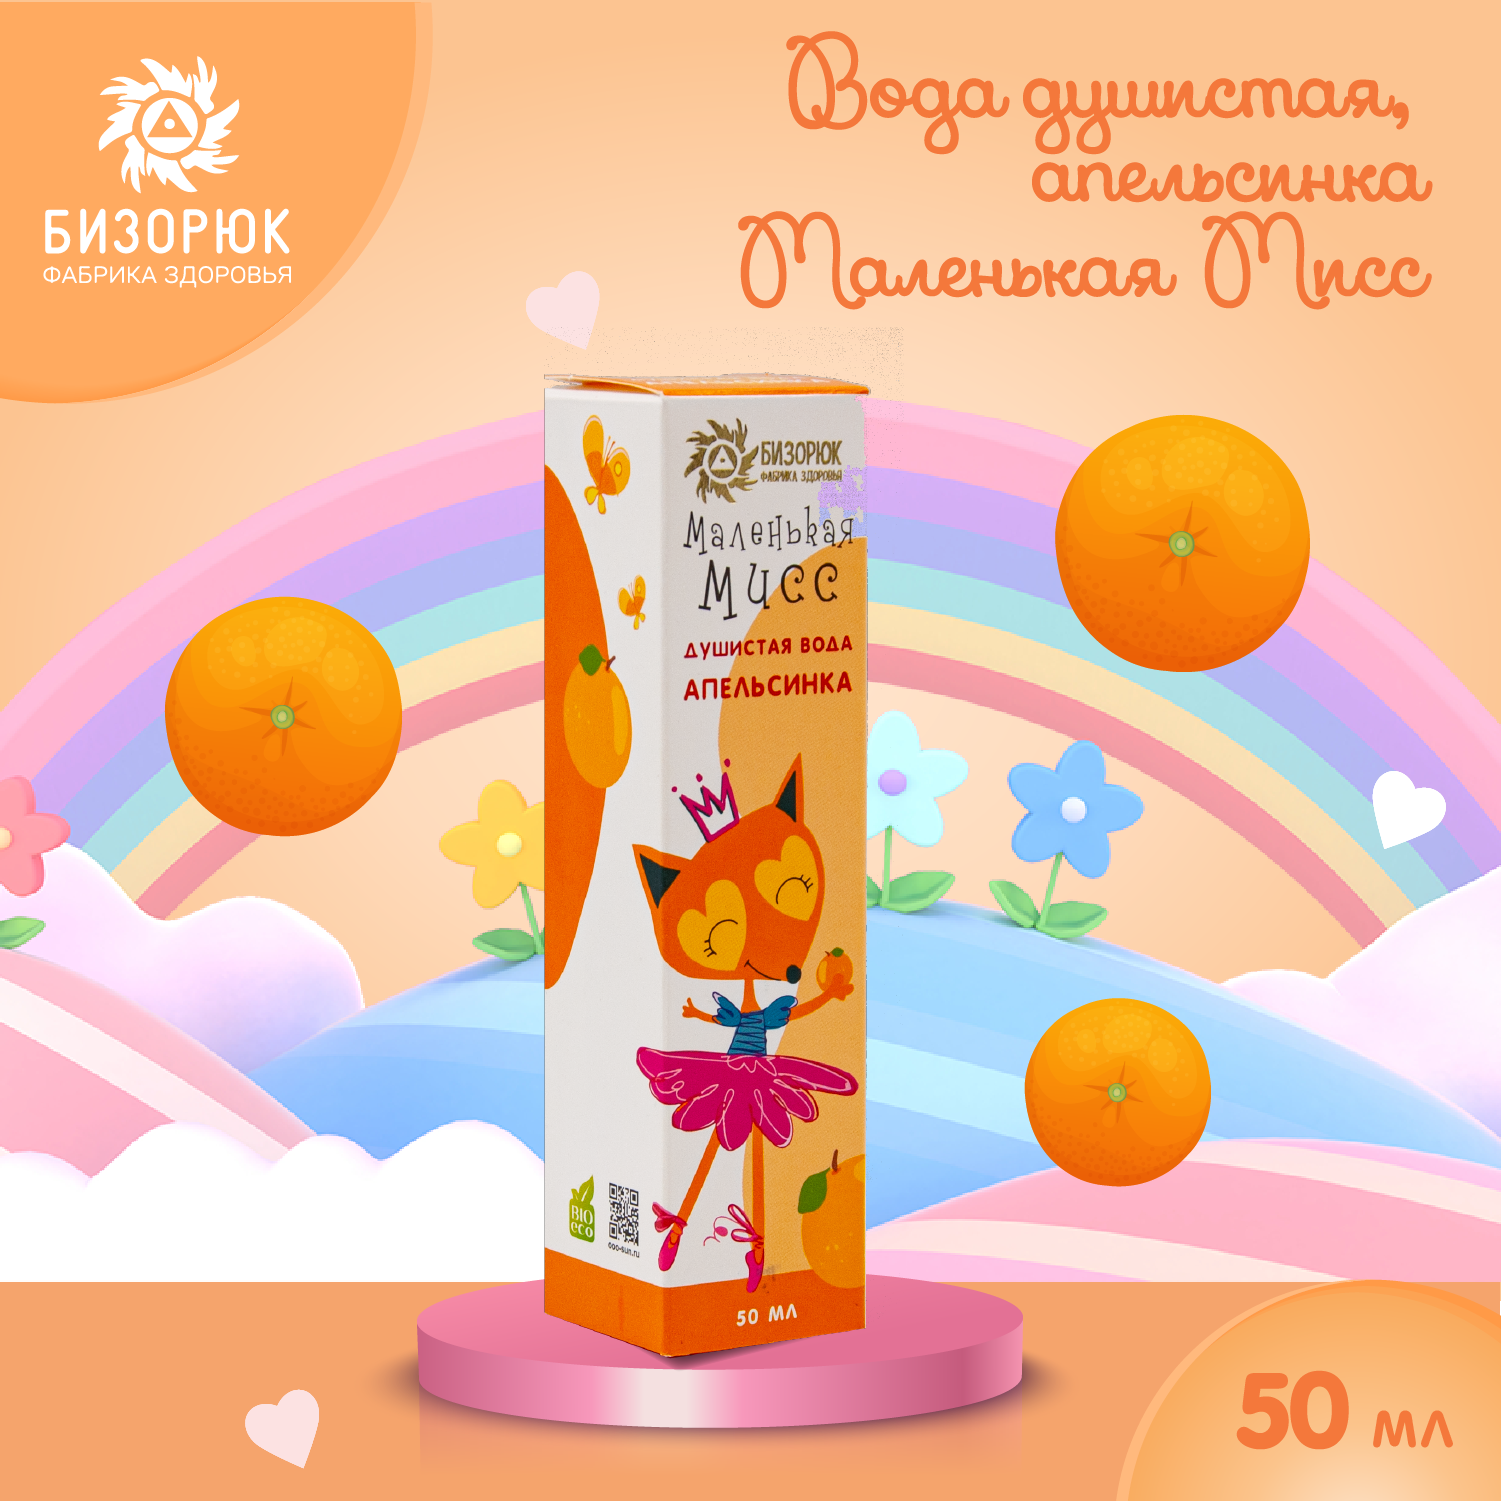 Вода душистая Бизорюк апельсин Маленькая Мисс 50мл - фото 2